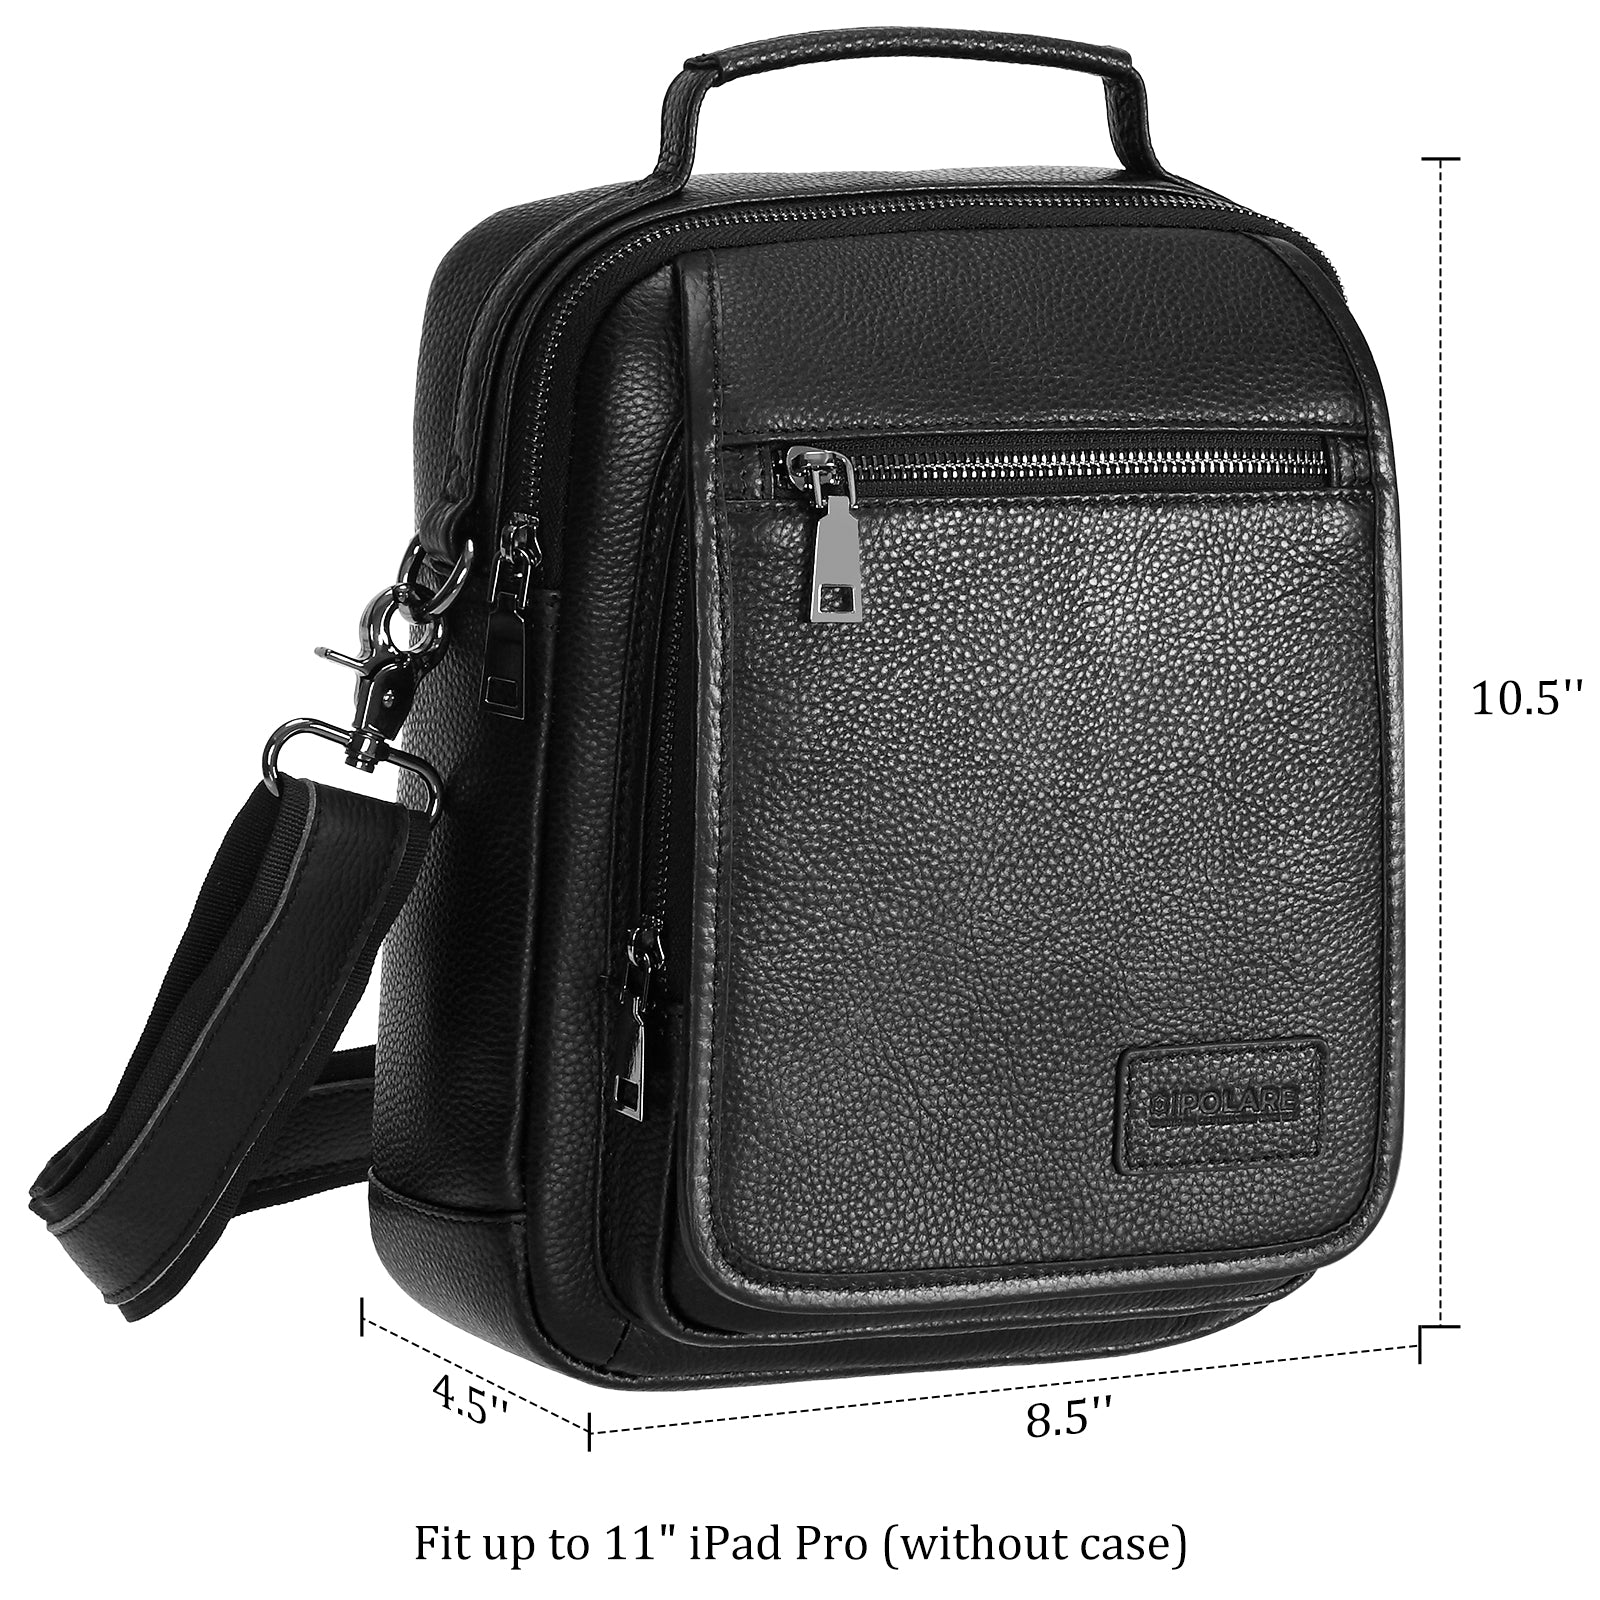 Italian Leather Messenger Bag Waterproof Travel Shoulder Bag (Dimension)